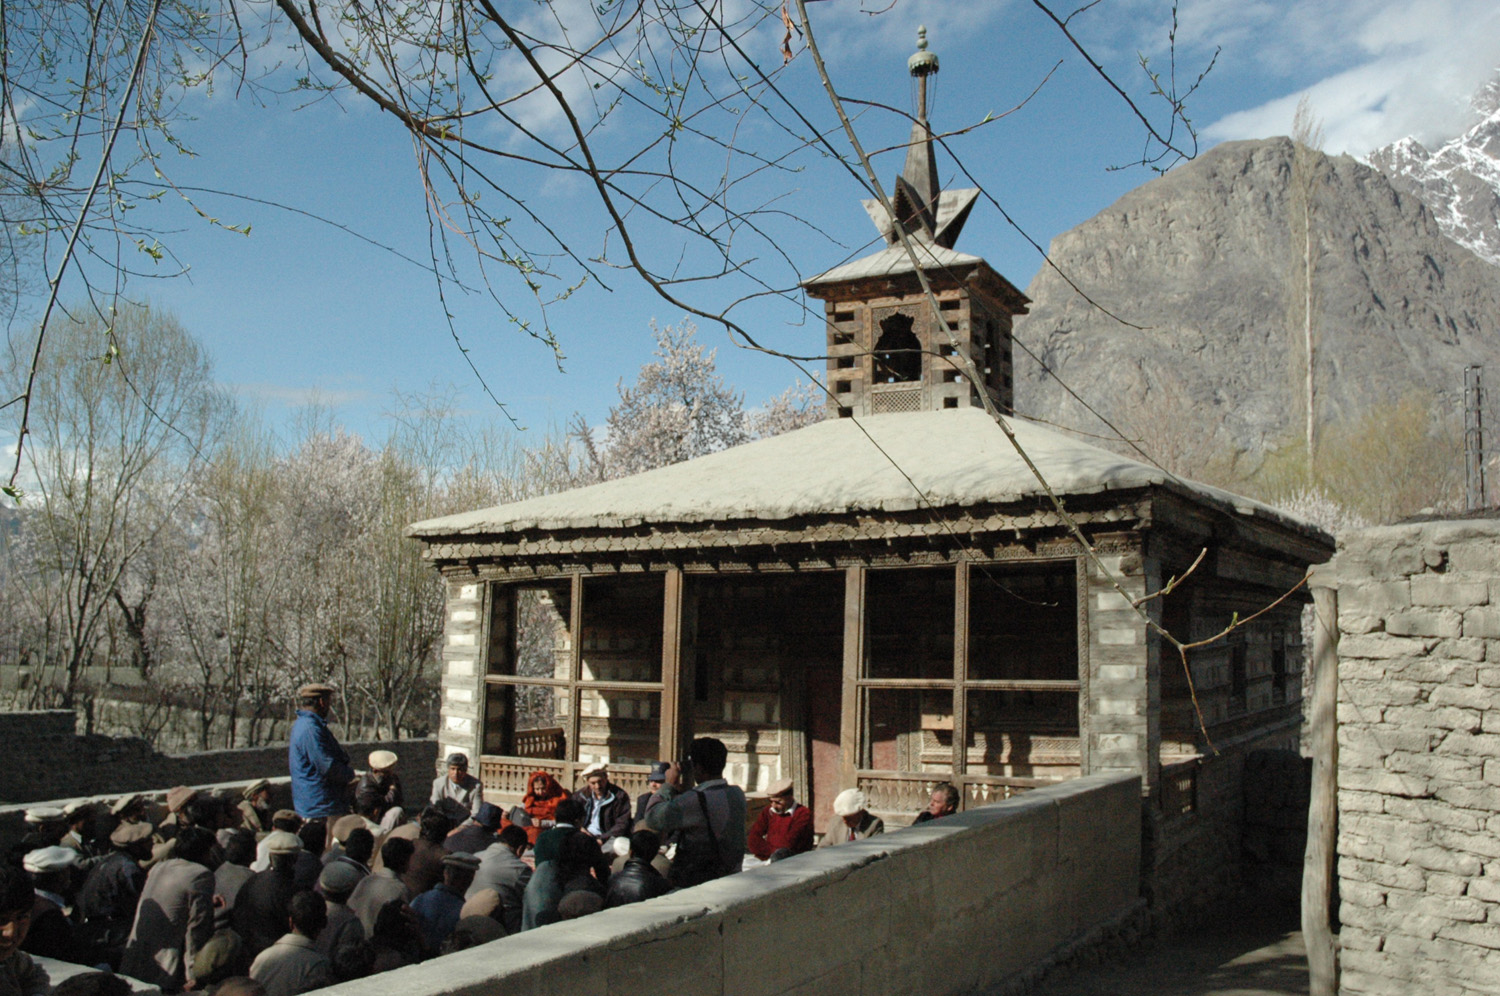 Amburiq Mosque in its context